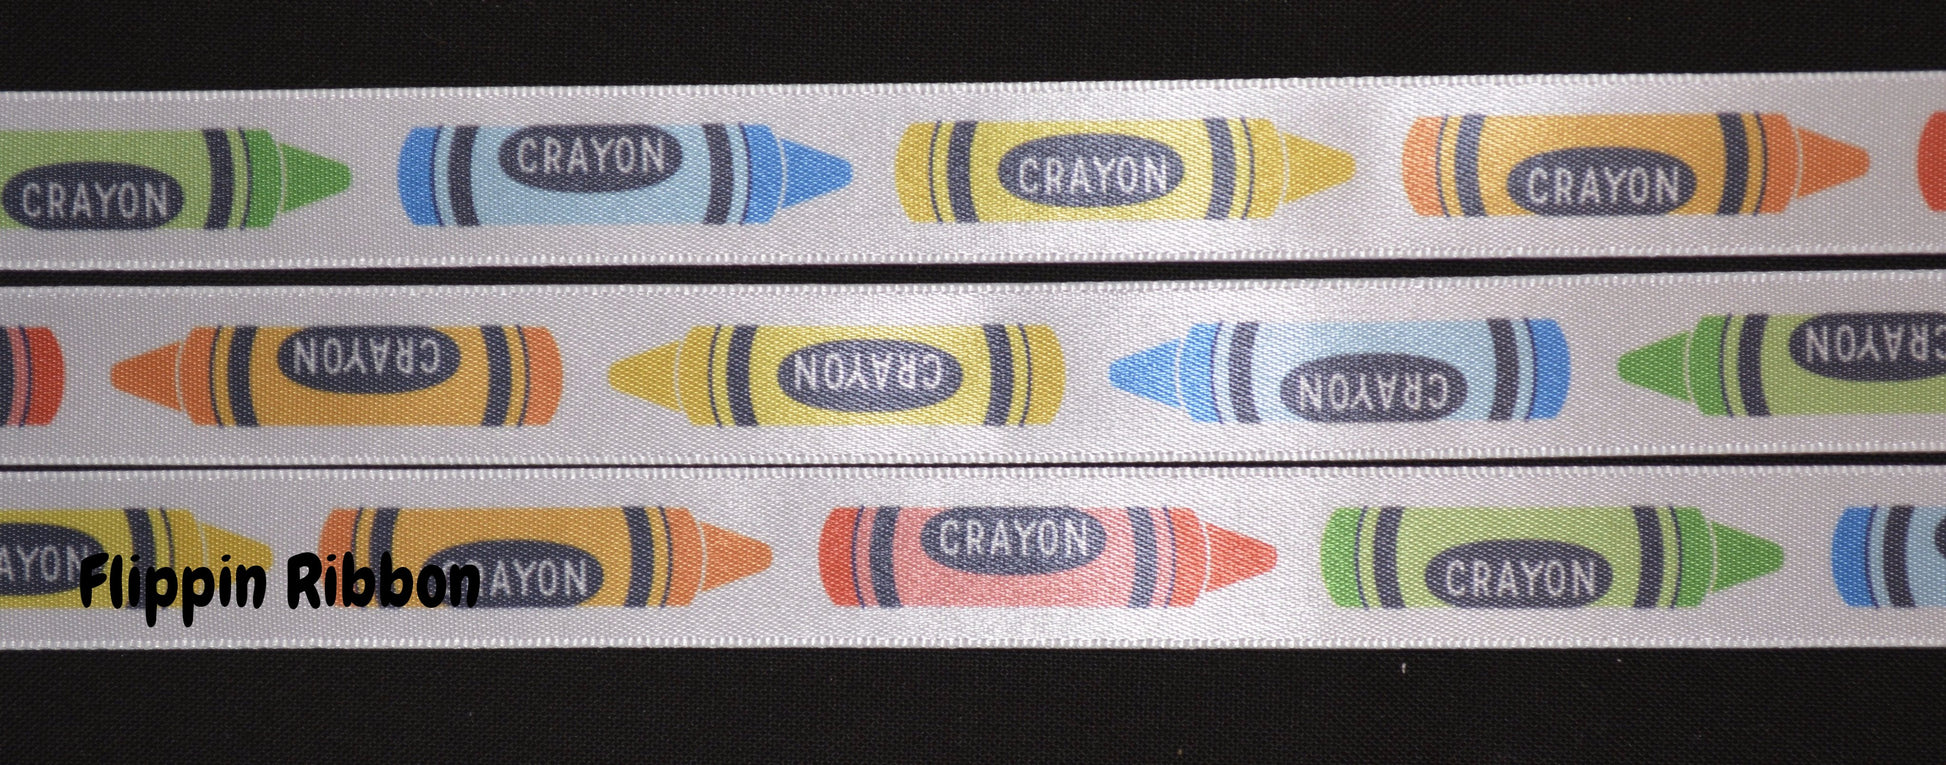 ribbon with crayons - Flippin Ribbon